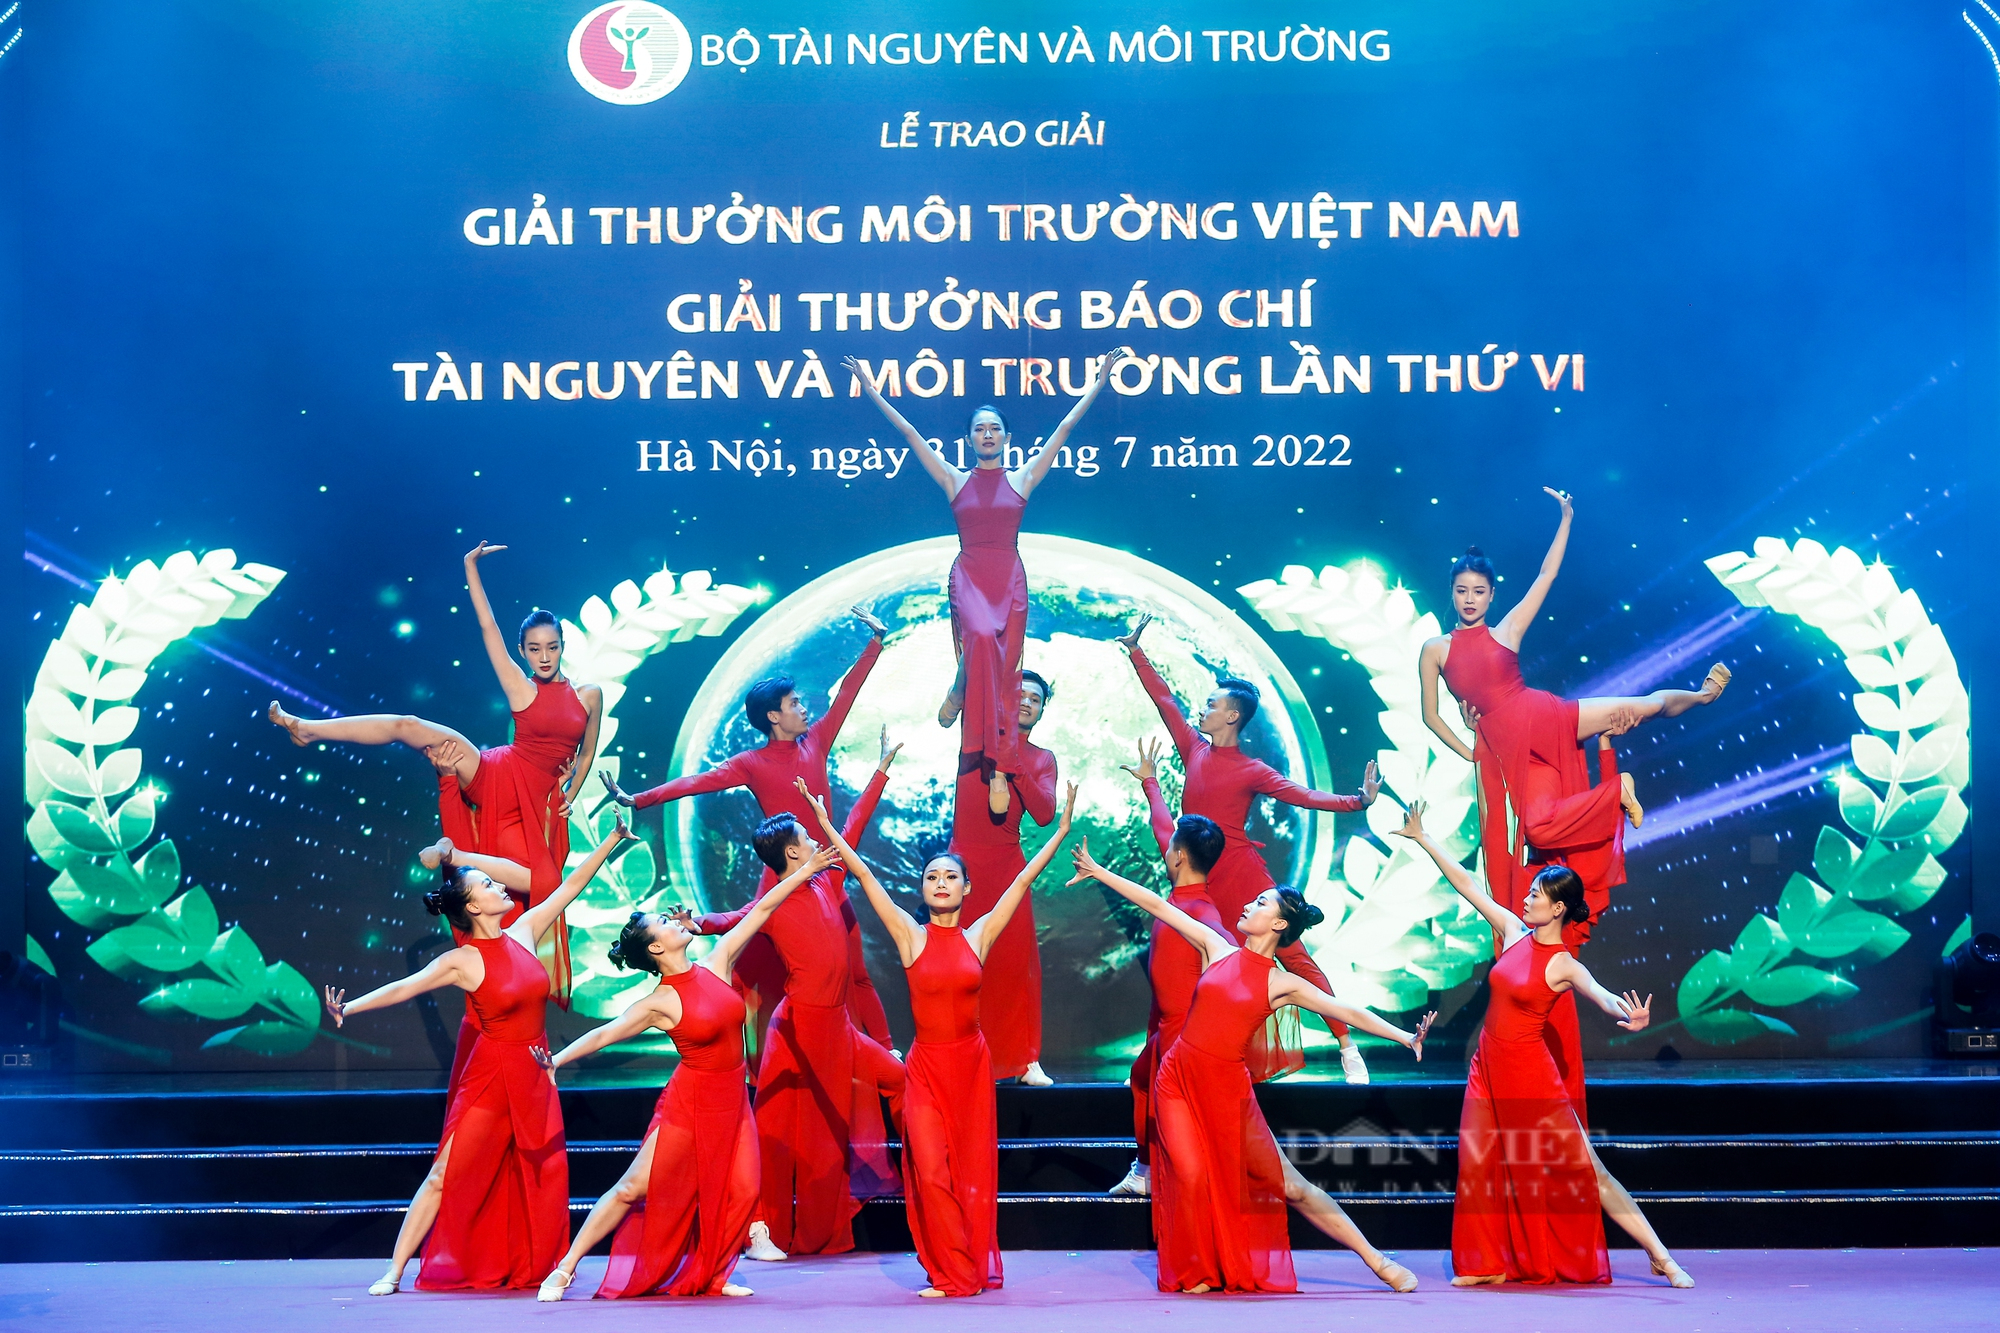 Báo NTNN/Dân Việt đoạt 1 Giải A, 1 Giải B tại Giải thưởng Báo chí Tài nguyên và Môi trường năm 2022 - Ảnh 1.